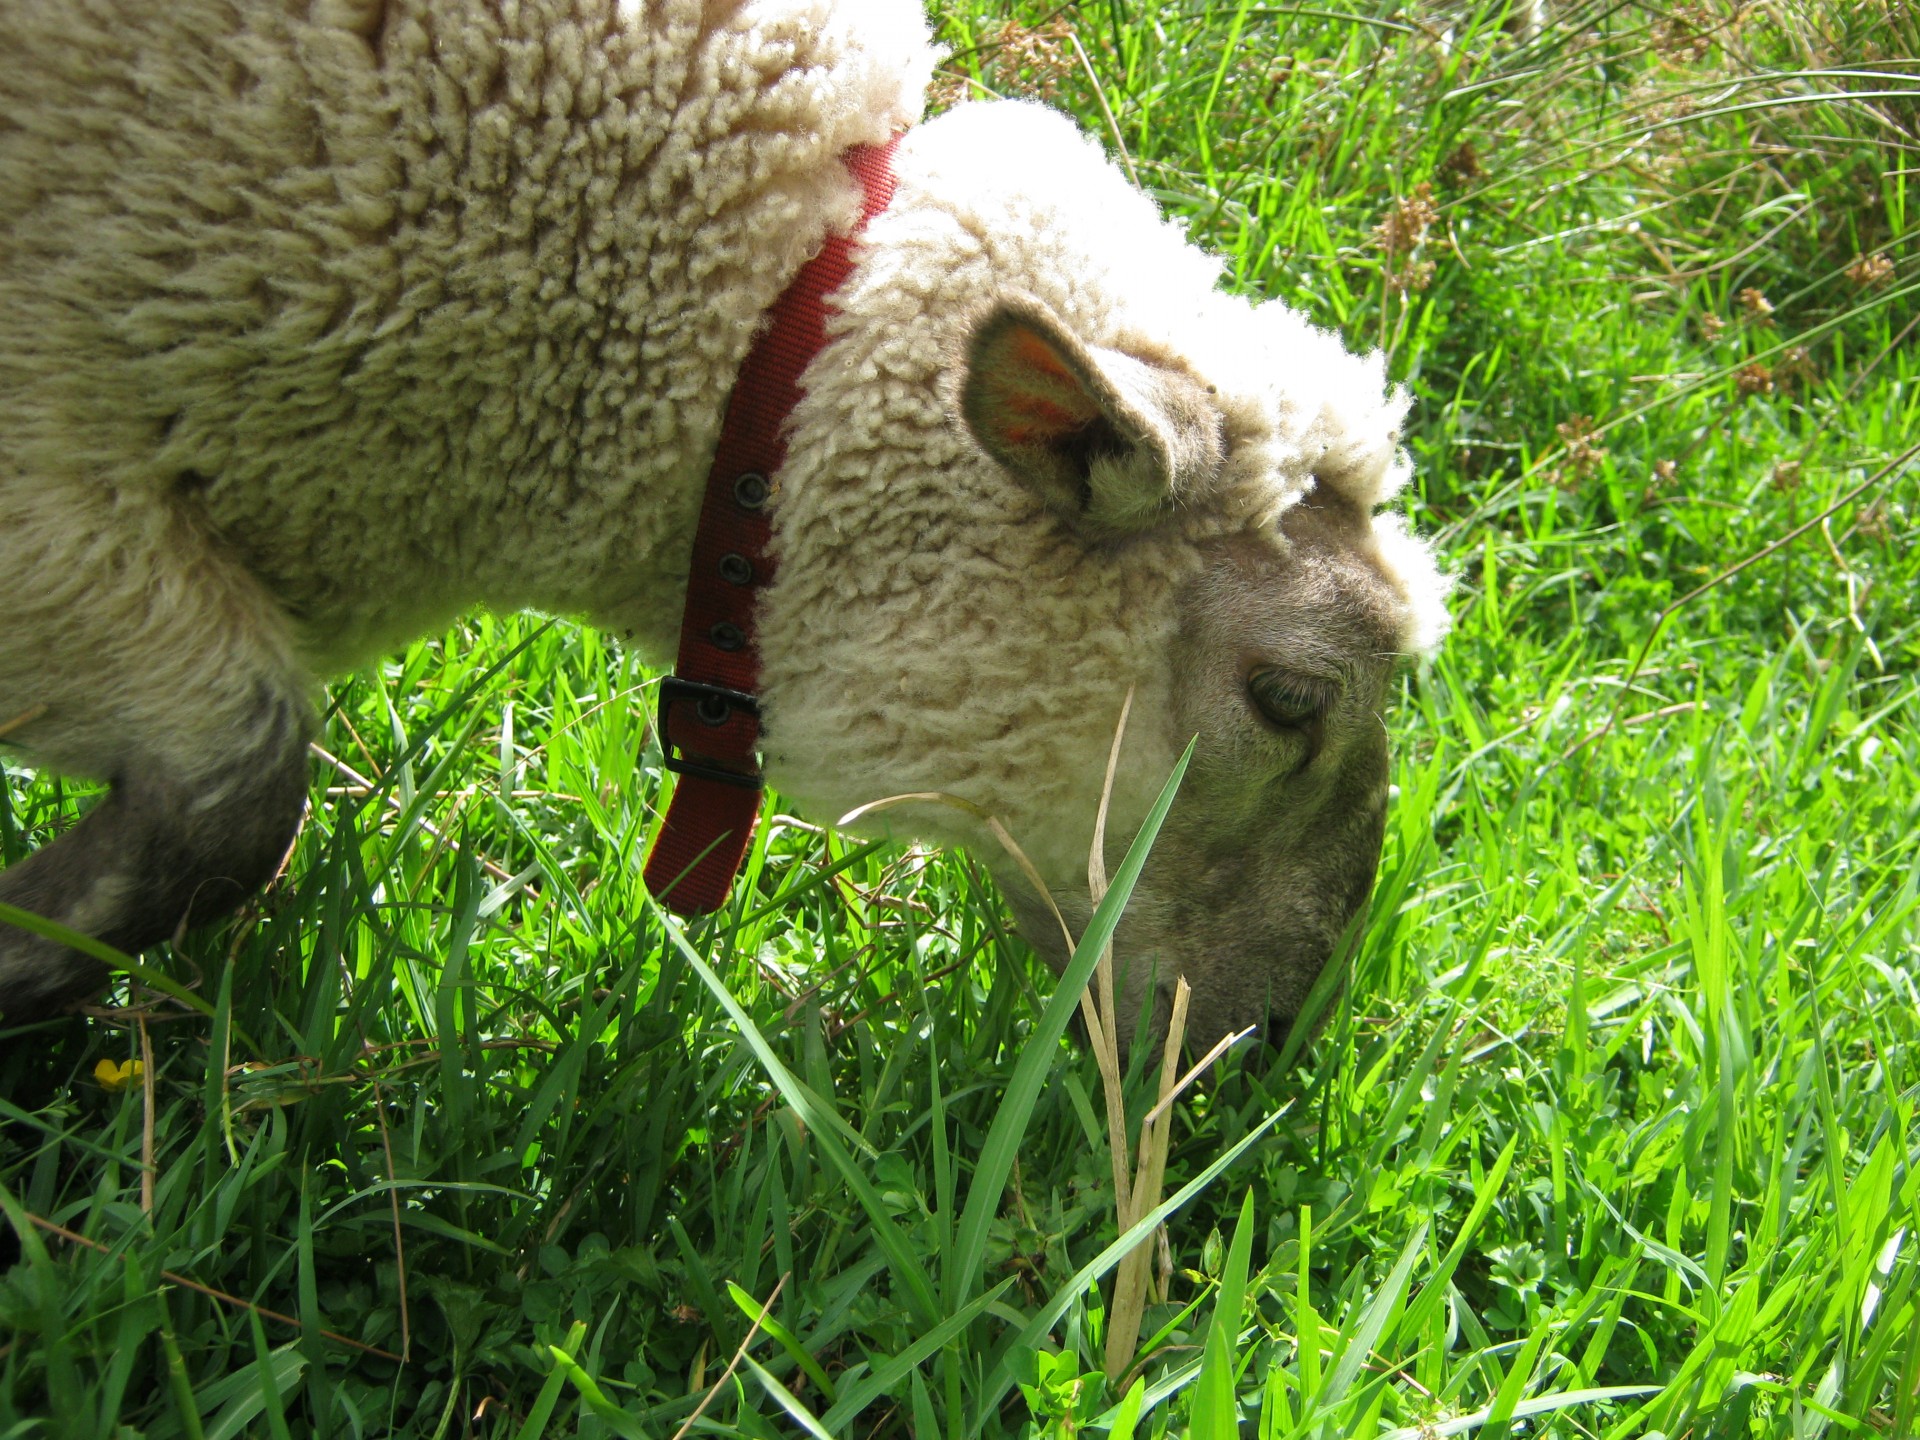 A Tame Sheep